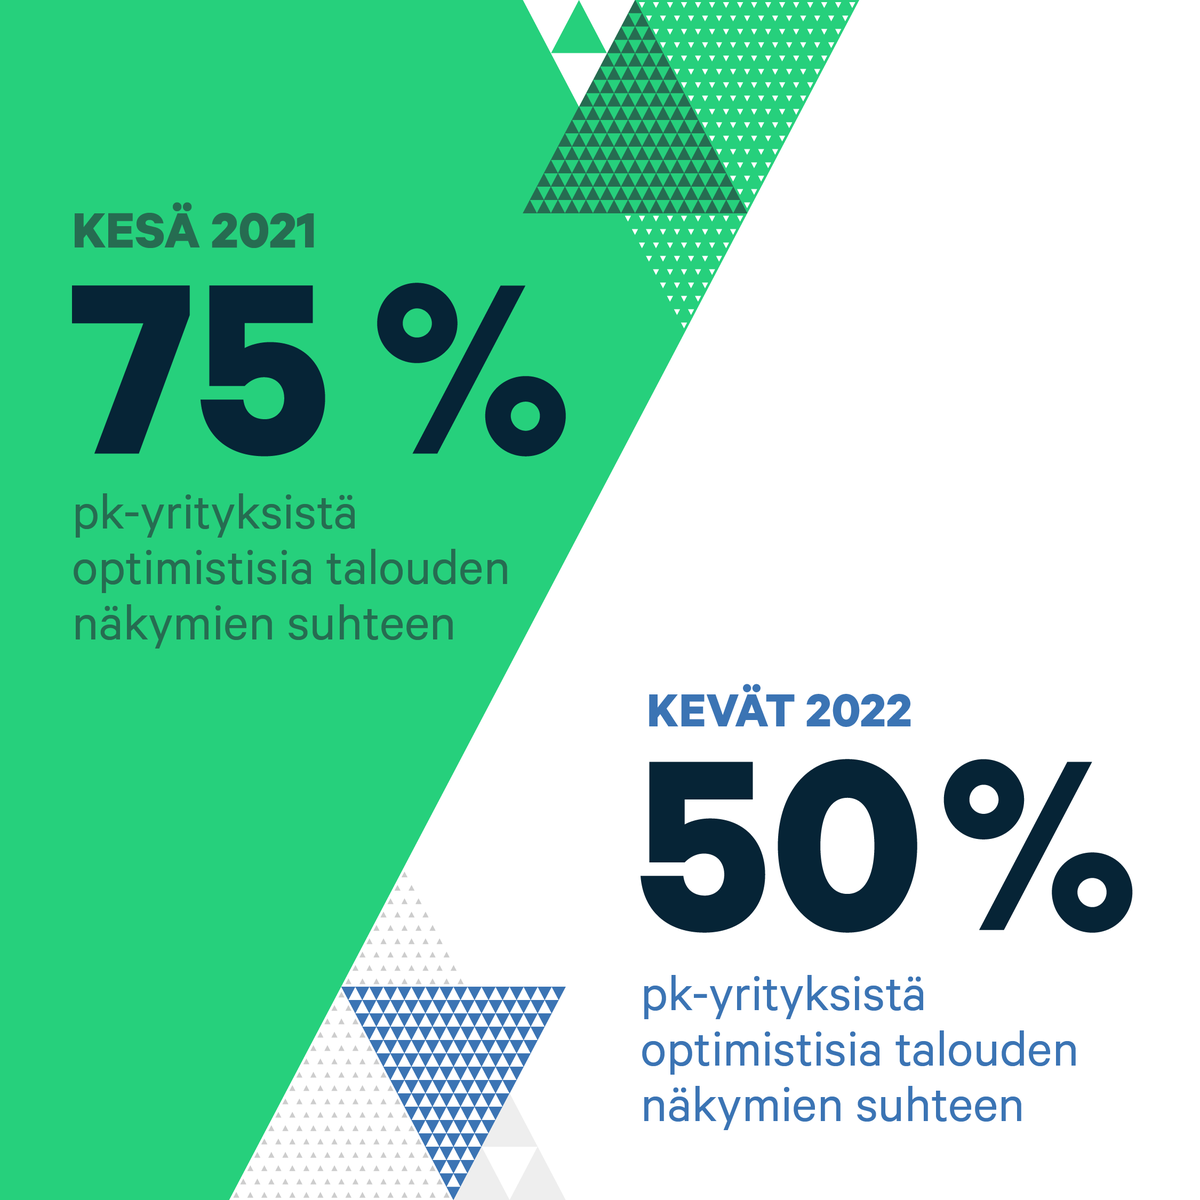 ✅Tuoreen #pkyritys barometrimme mukaan suomalaisten pk-yritysten optimismi talousnäkymiin on laskenut kesästä 2021 lähtien. 
📄 Lataa raportti tästä »  https://t.co/0X62CJzcN7
#AzetsSMEChampions https://t.co/ZSXYe8wqMR